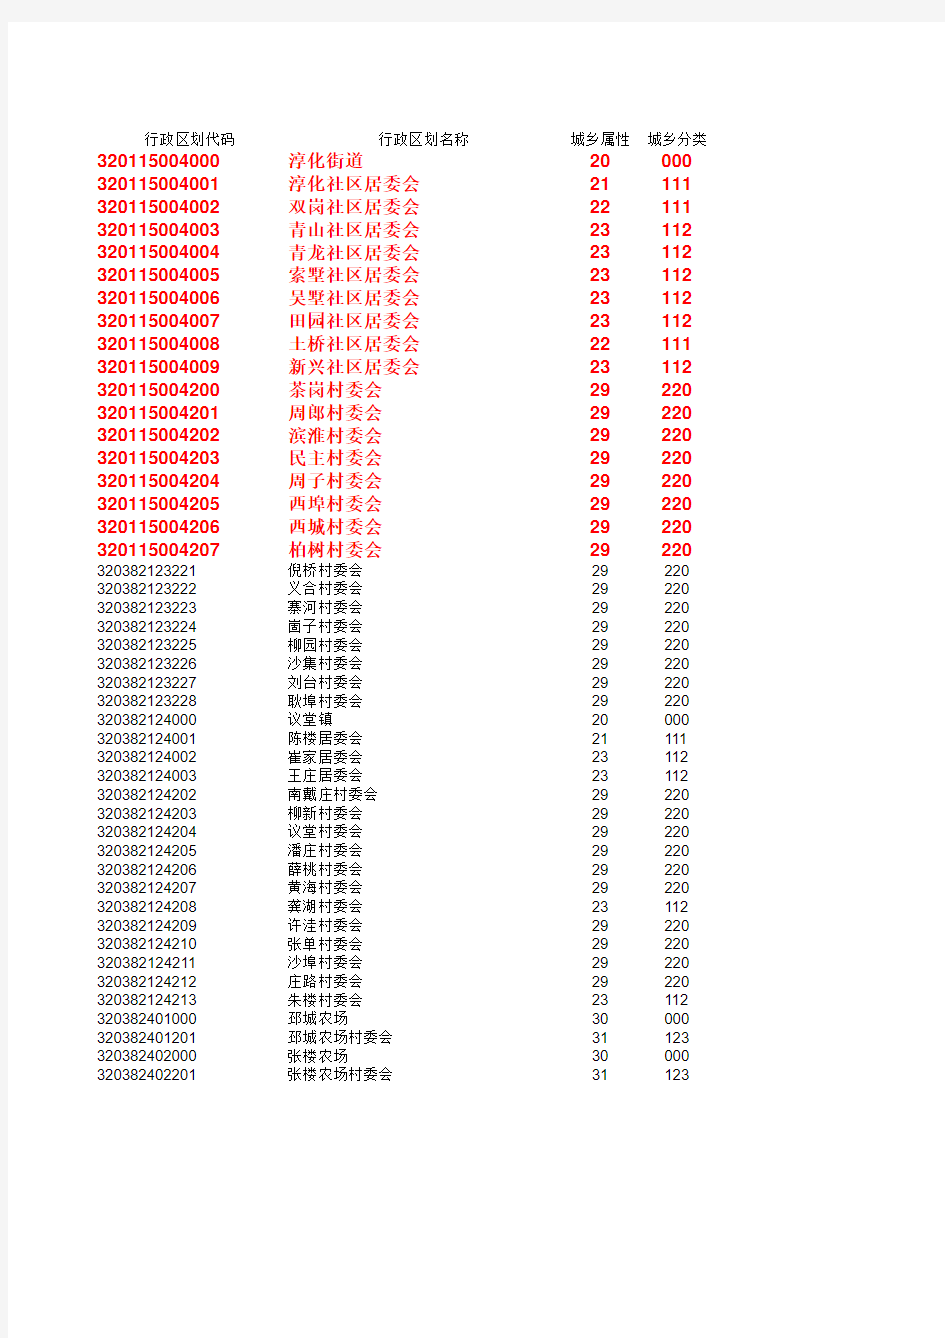 2011年全省统计用区划代码和城乡分类代码库(分组)